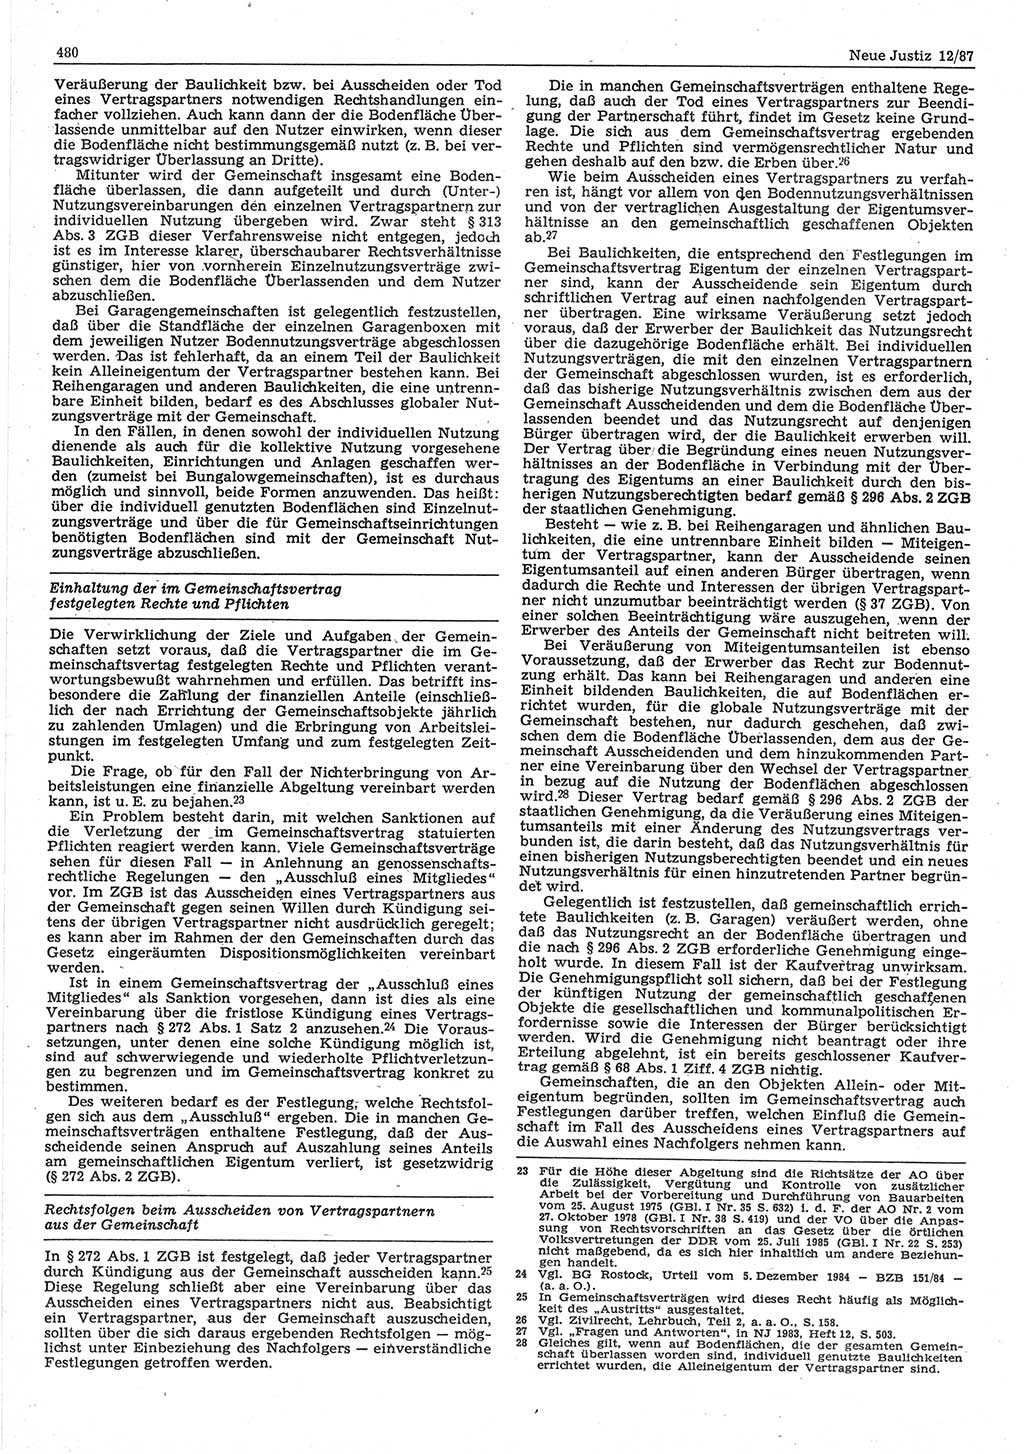 Neue Justiz (NJ), Zeitschrift für sozialistisches Recht und Gesetzlichkeit [Deutsche Demokratische Republik (DDR)], 41. Jahrgang 1987, Seite 480 (NJ DDR 1987, S. 480)